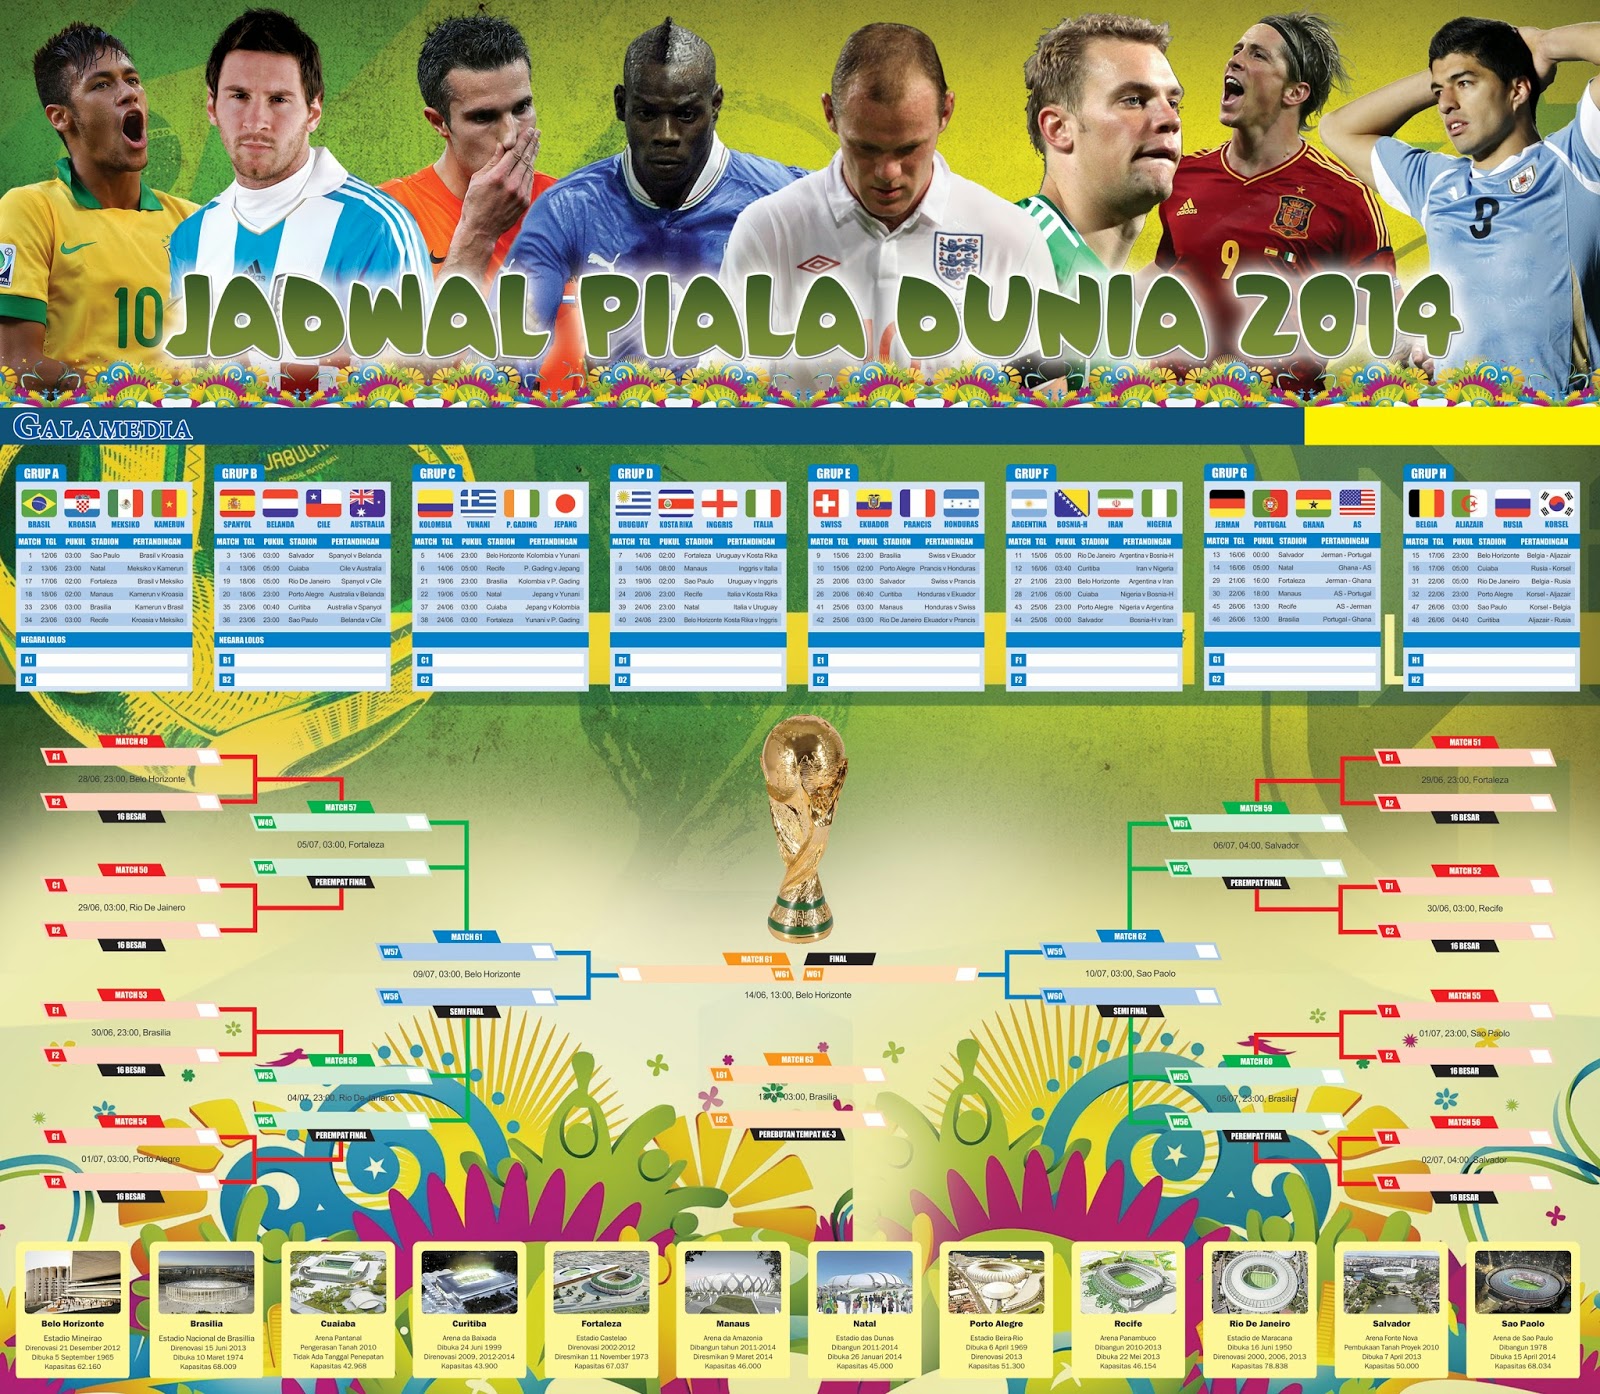 Jadwal Piala Dunia 2014 (Lengkap) - Klik Soreang